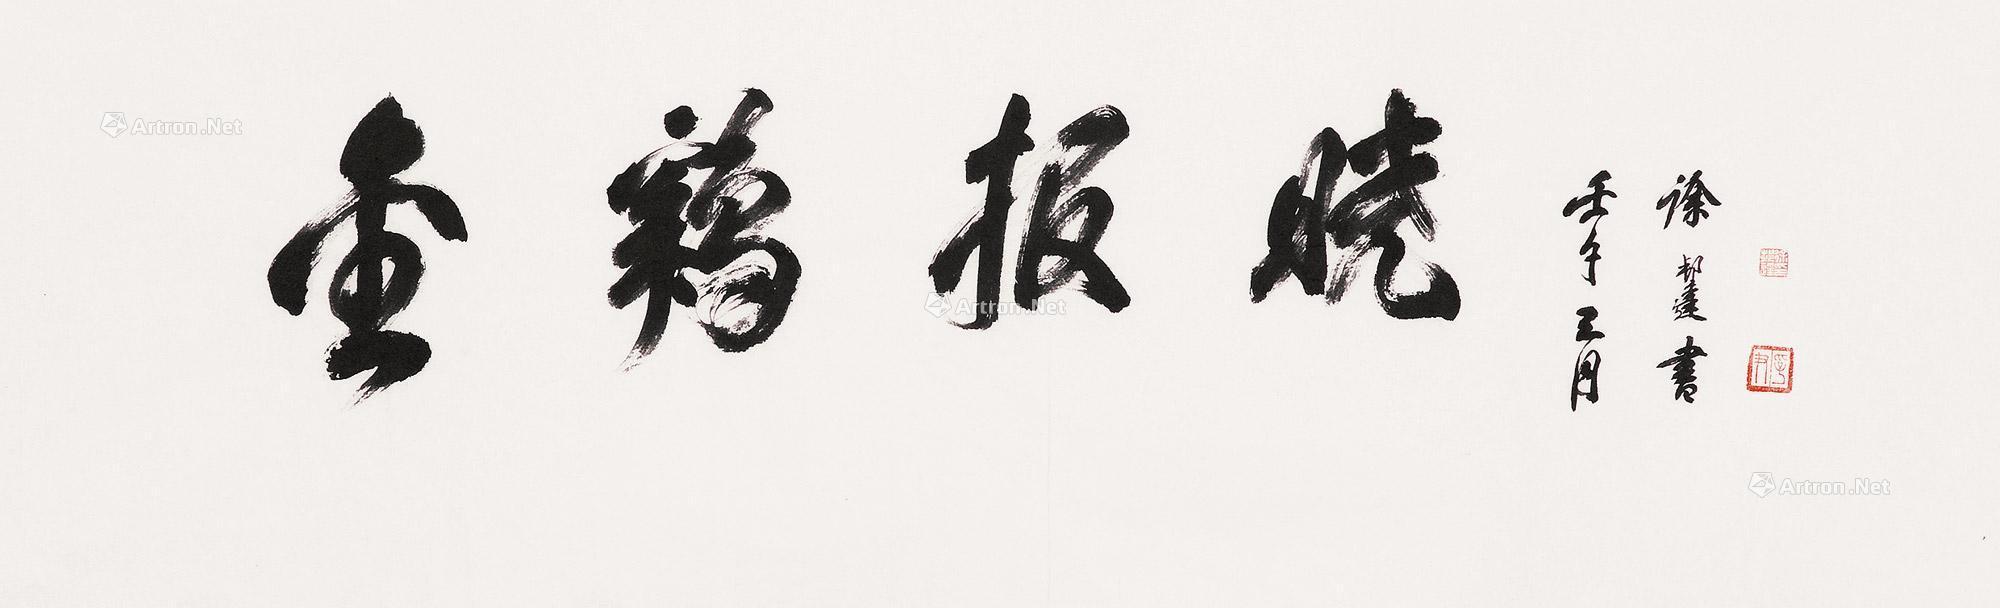 行书金鸡报晓 镜心作者徐邦达 (1911～2012)拍品分类中国书画